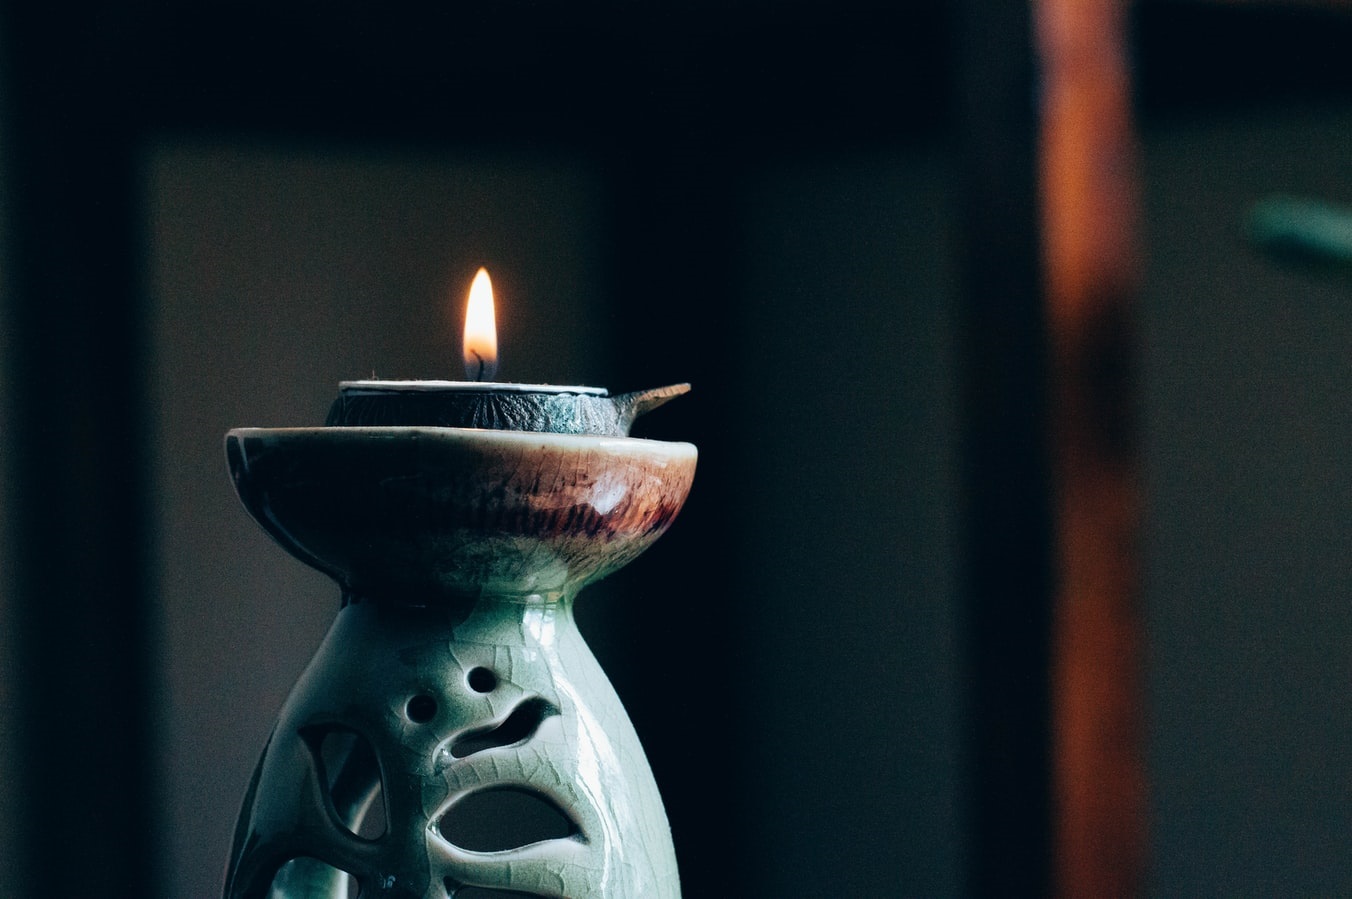 Bild einer im dunkeln leuchtenden Kerze, soll den Kampf gegen Despression und Angst symbolisieren